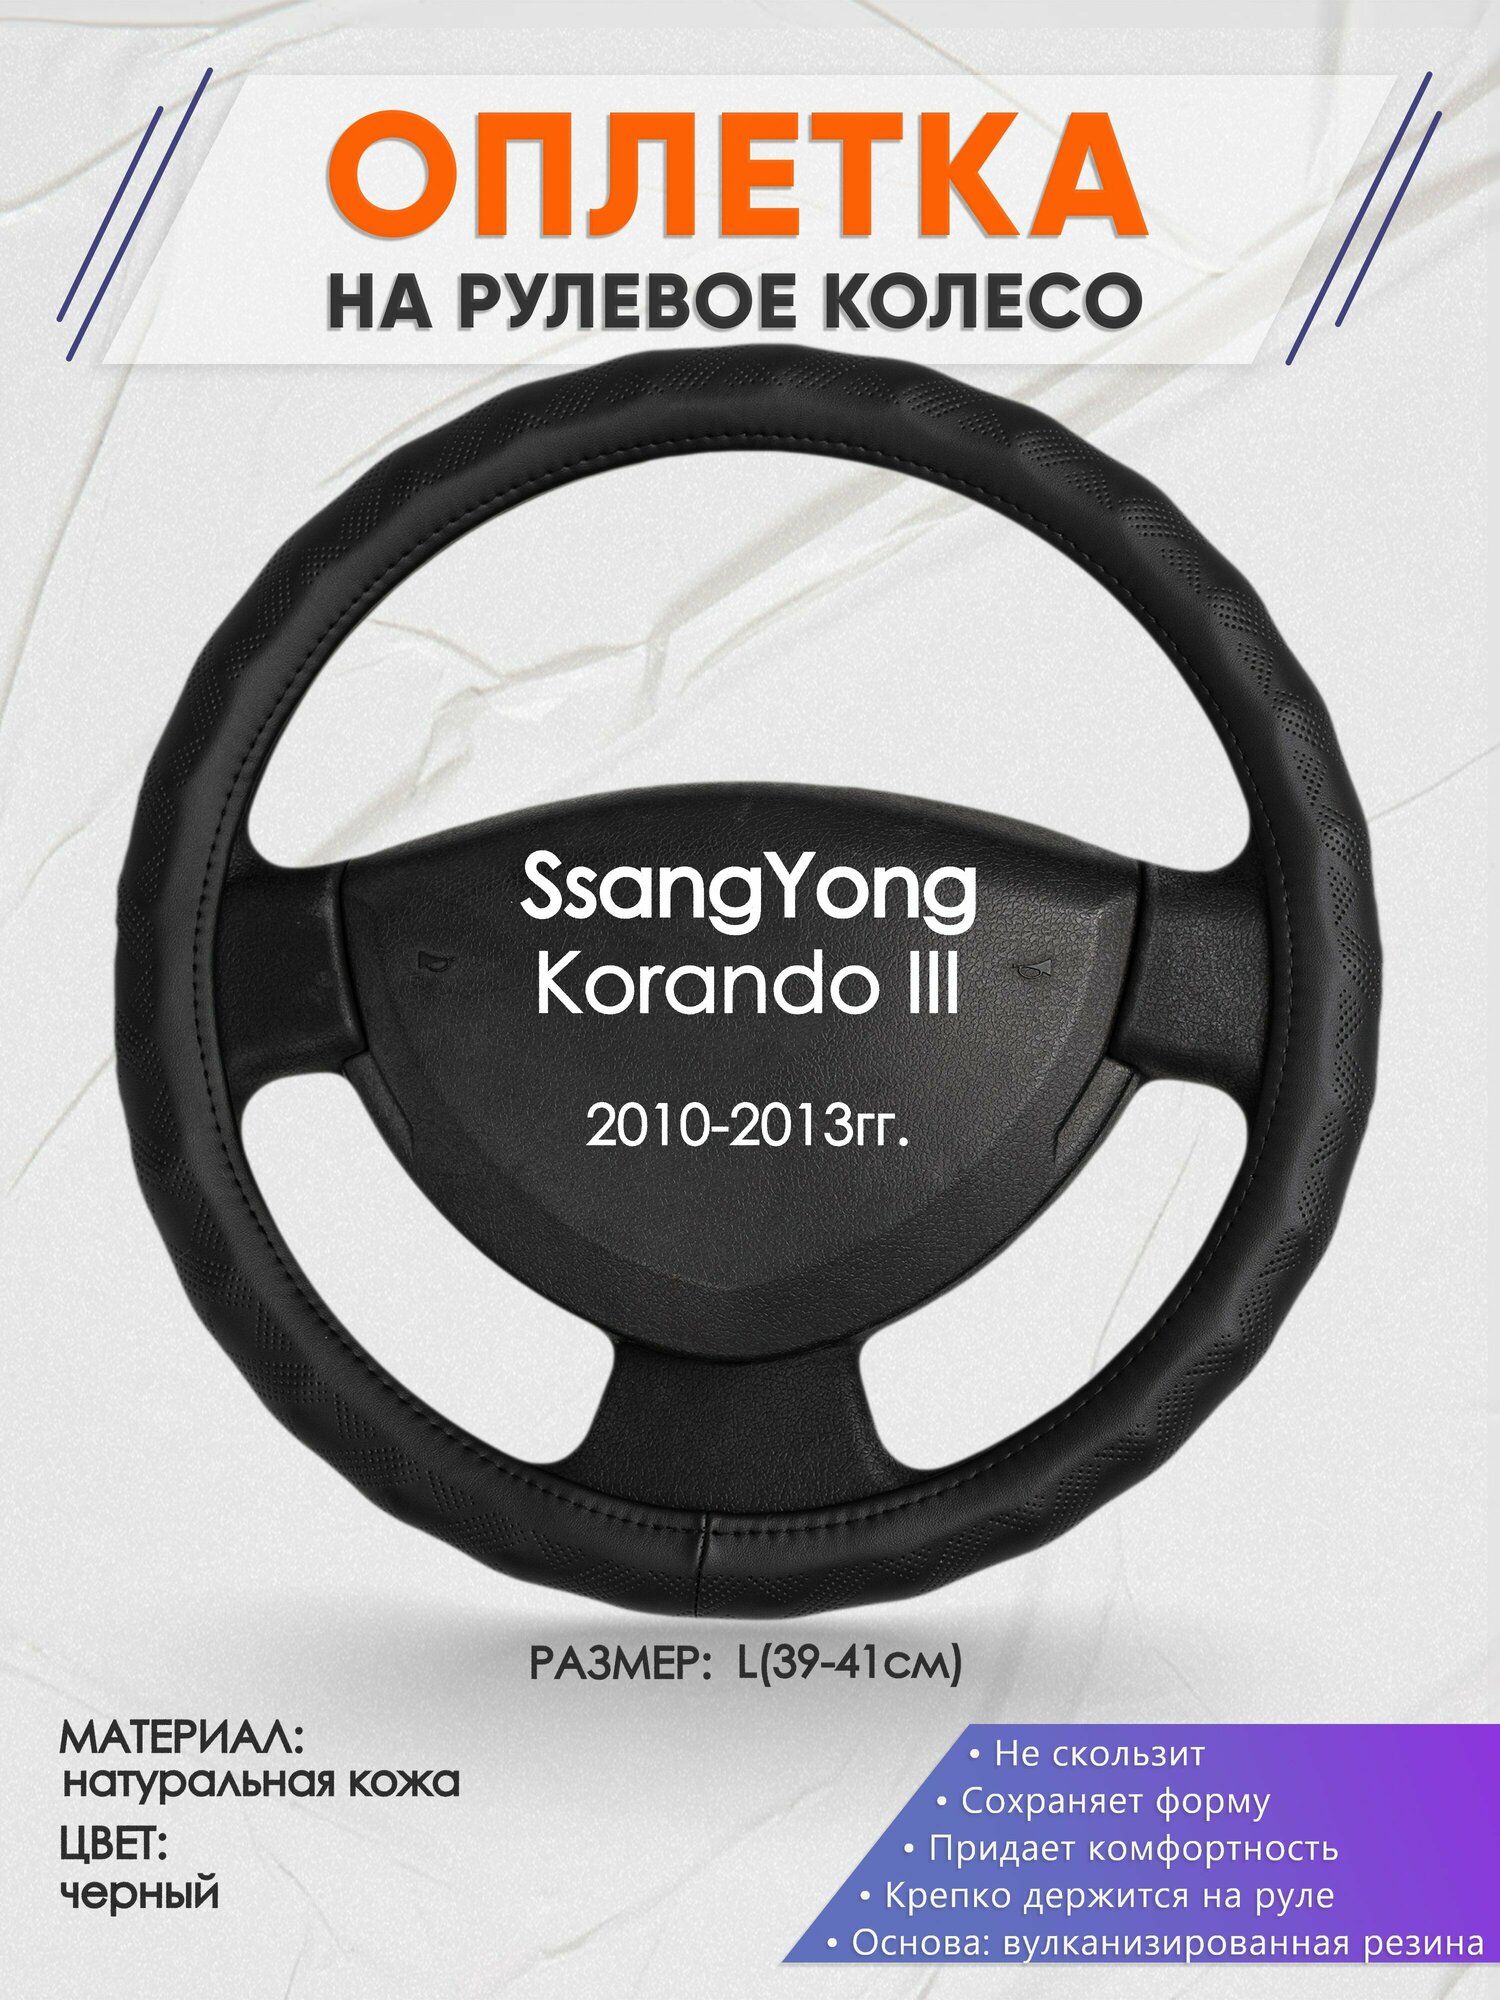 Оплетка на руль для SsangYong Korando 3(Санг Енг корандо) 2010-2013, L(39-41см), Натуральная кожа 26